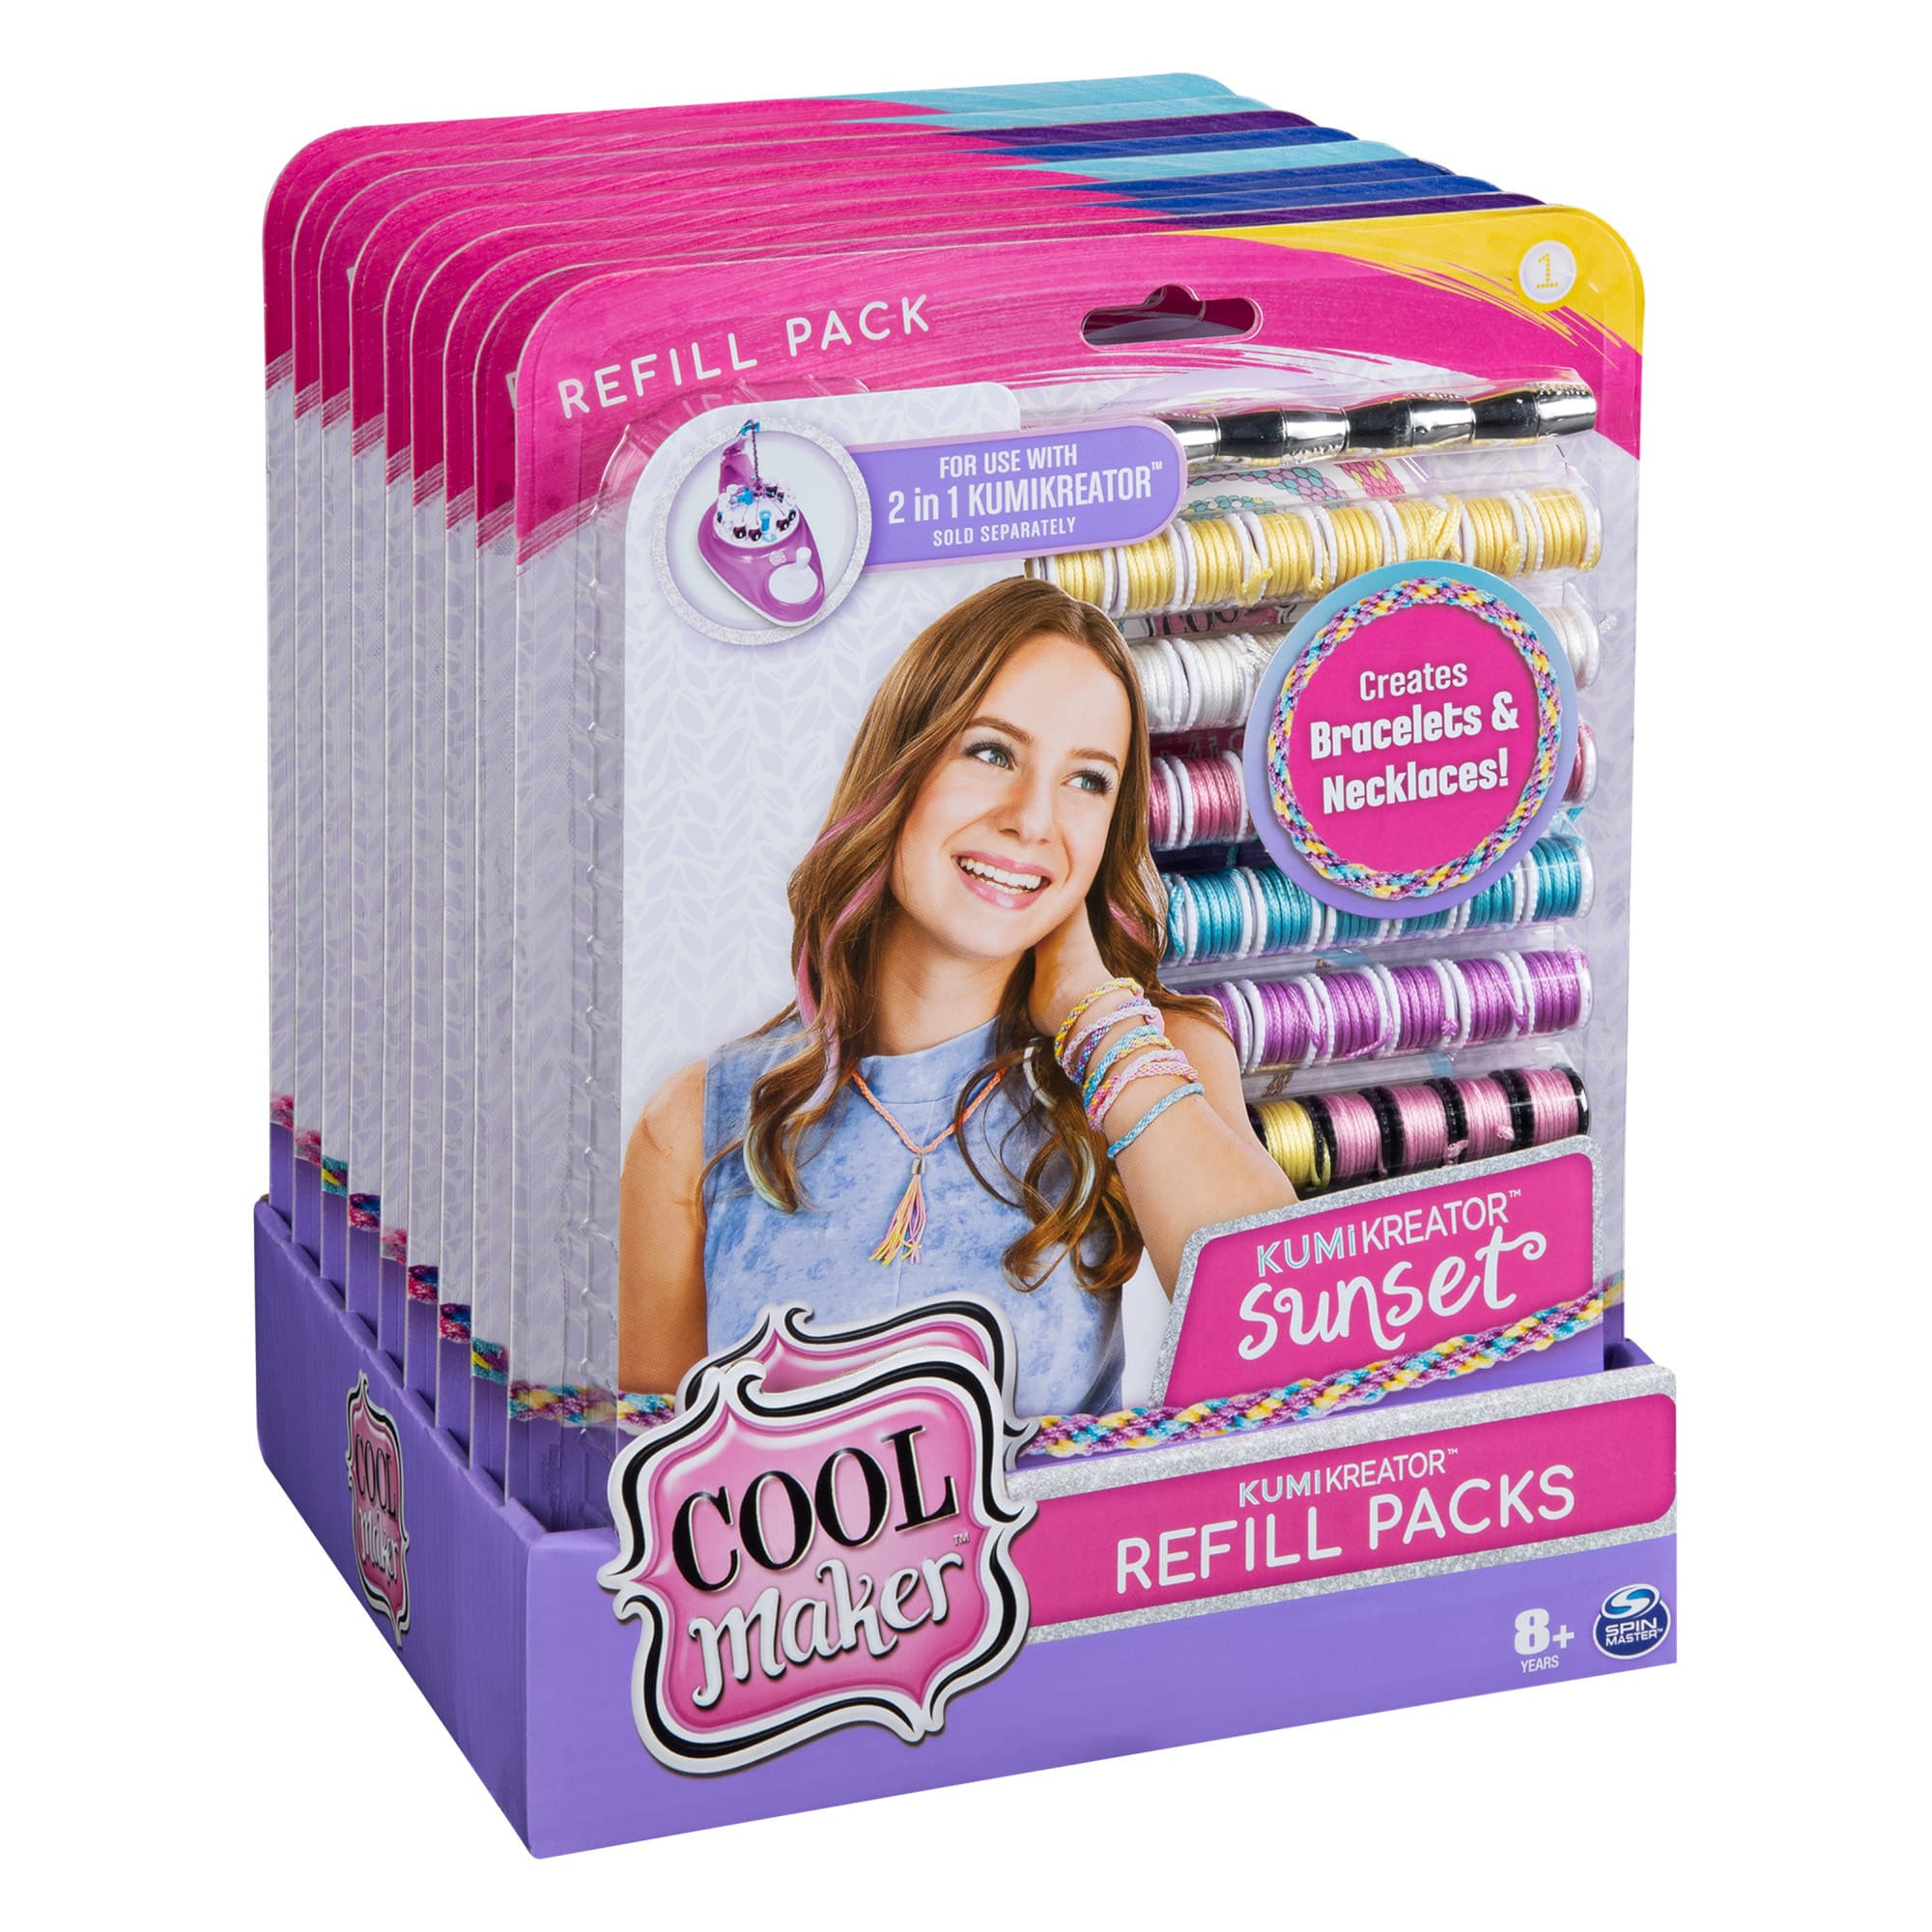 Cool Maker Pop Style Glitter & Gem Expansion Pack : Target